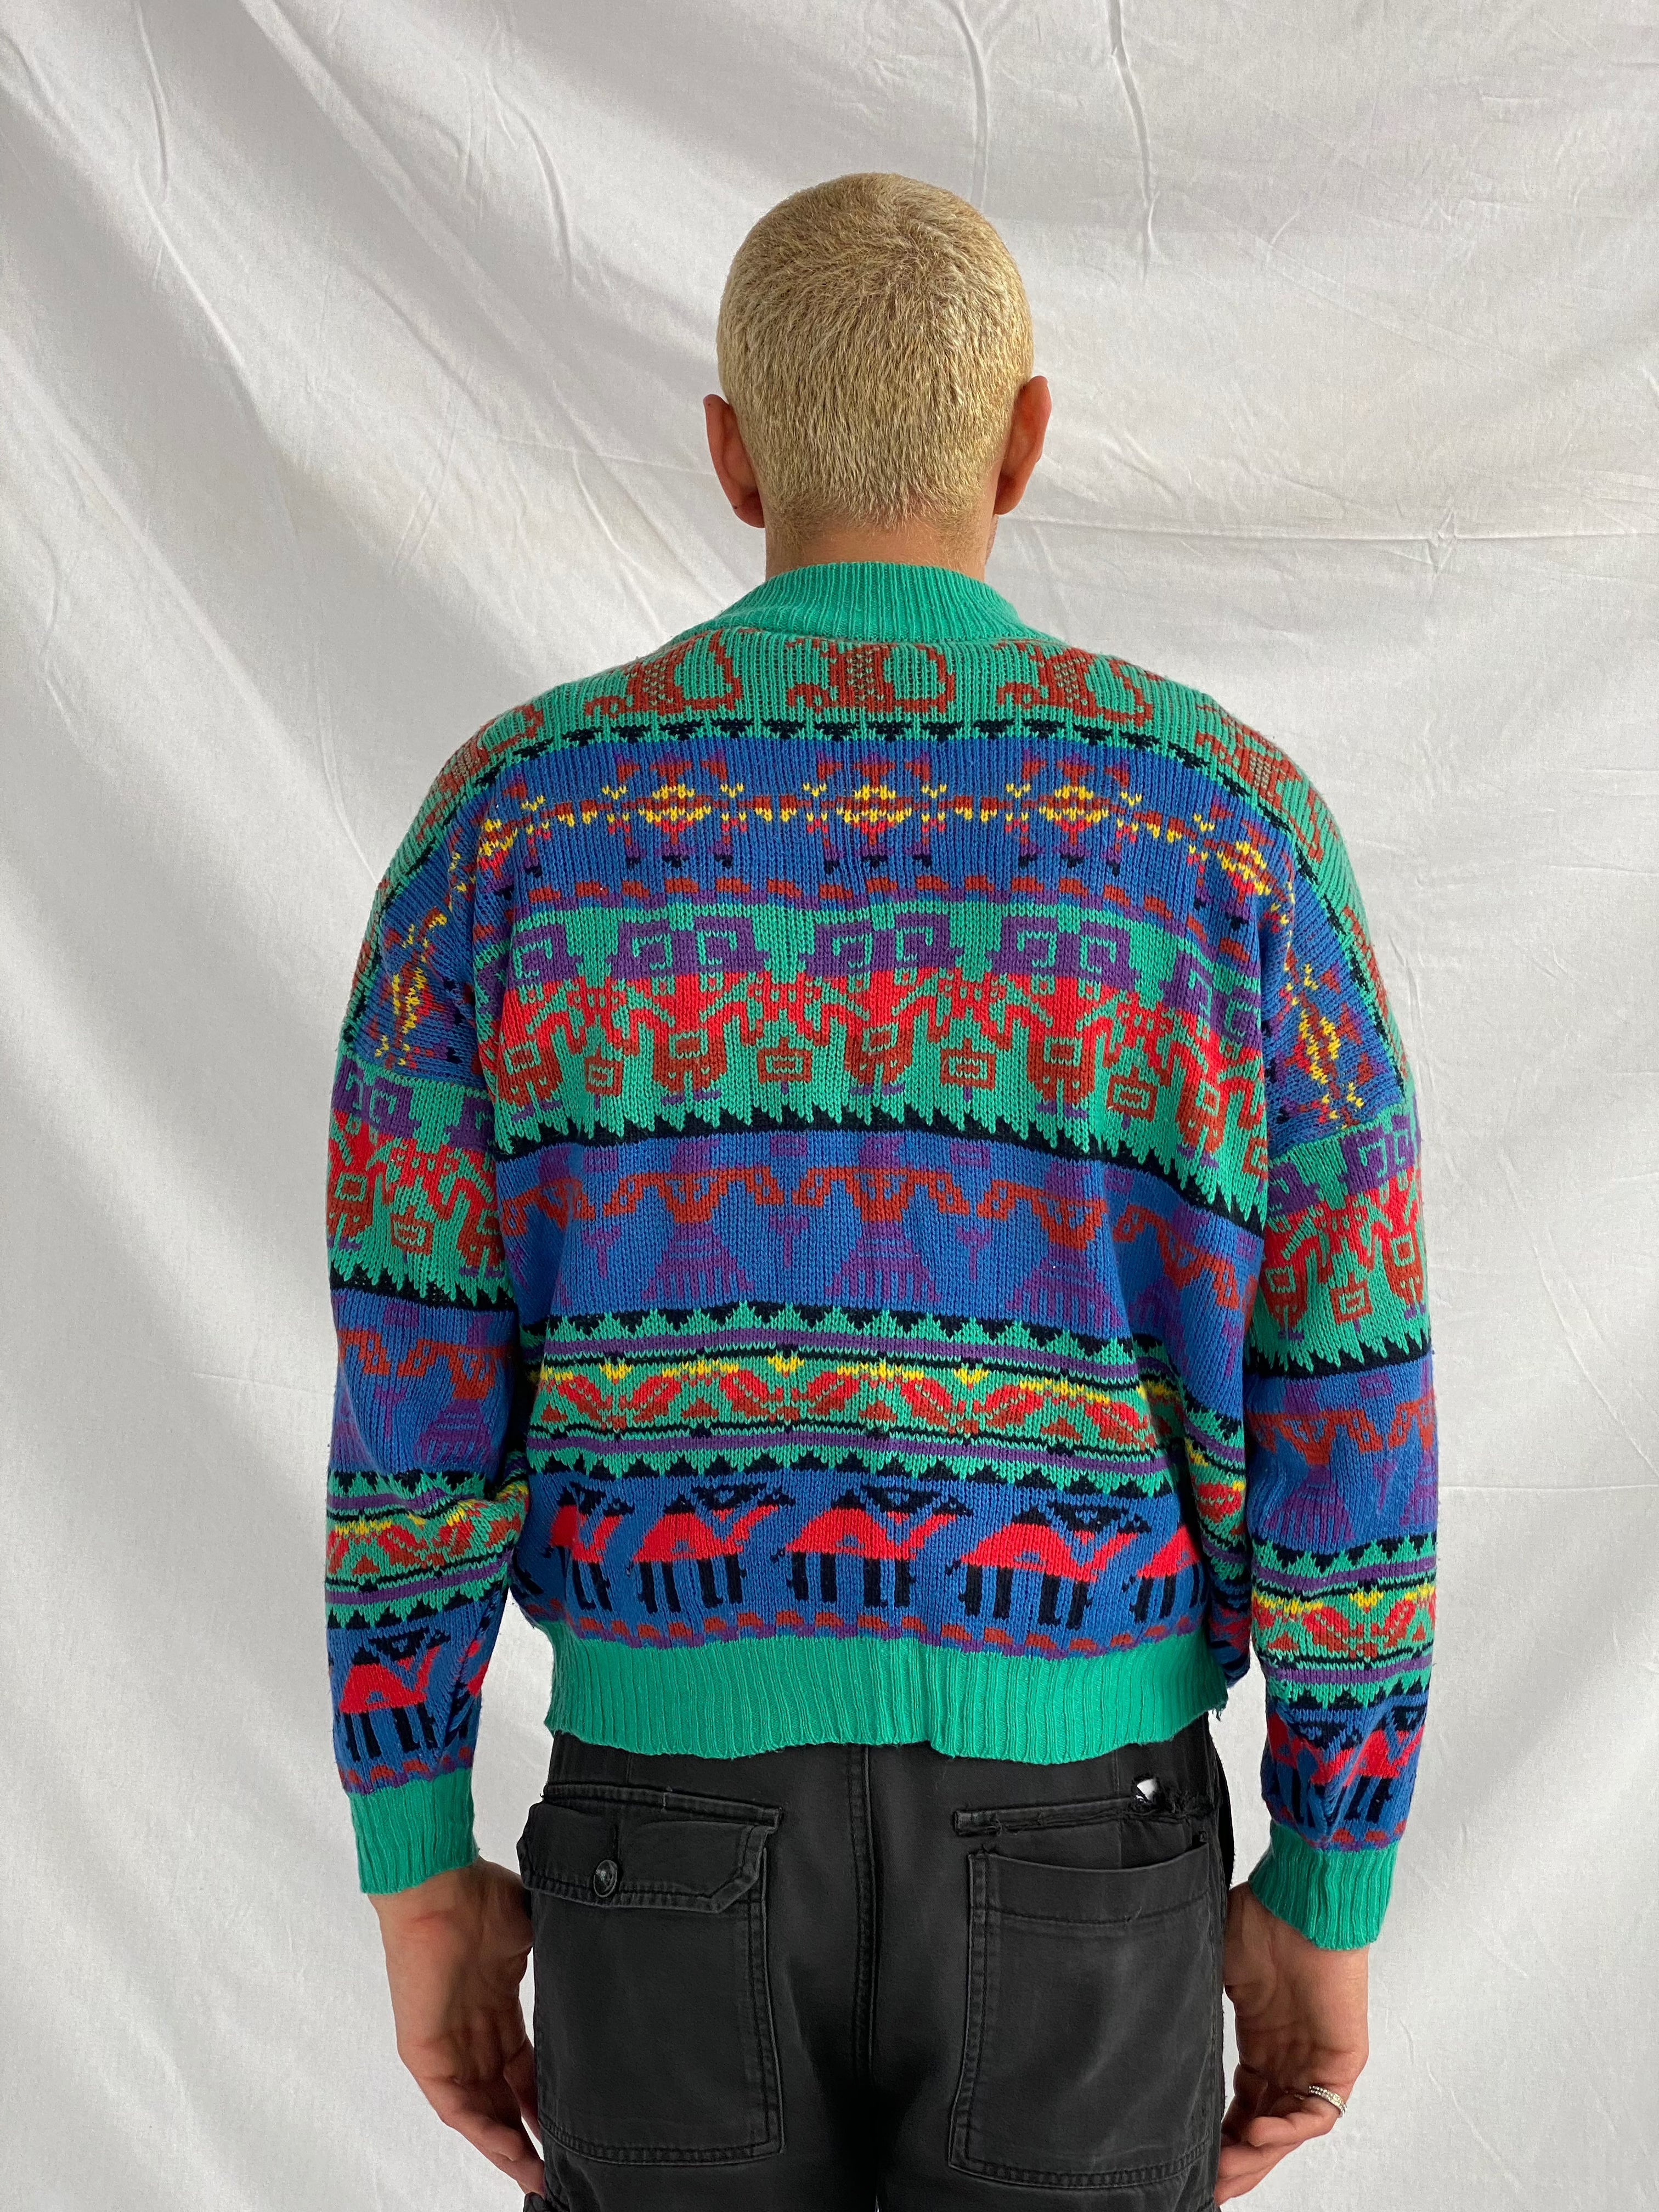 Vintage Knitted Sweater - Balagan Vintage Sweater 90s, knitted, knitted sweater, men, outerwear